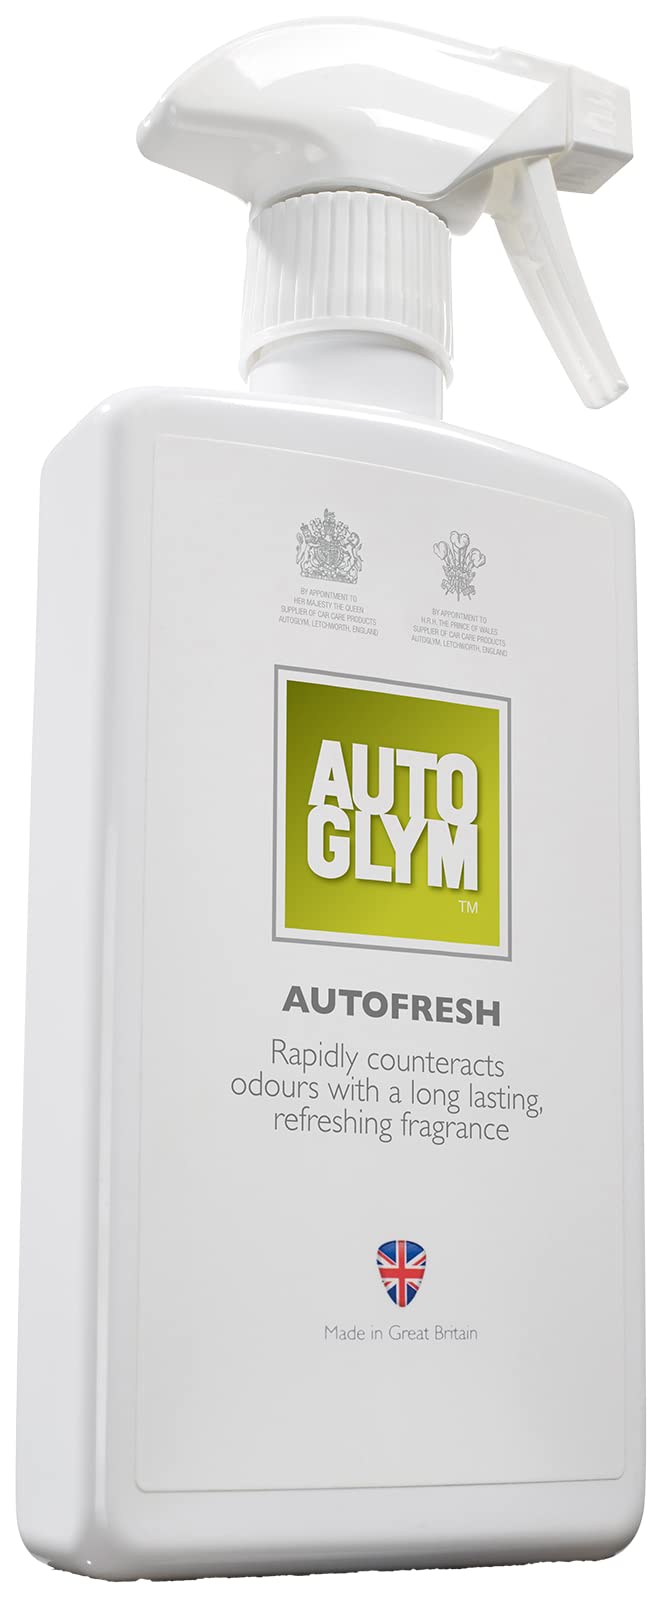 Autoglym Autofresh-Spray - Langanhaltende Frische für Autoinnenräume und Polster 500ml